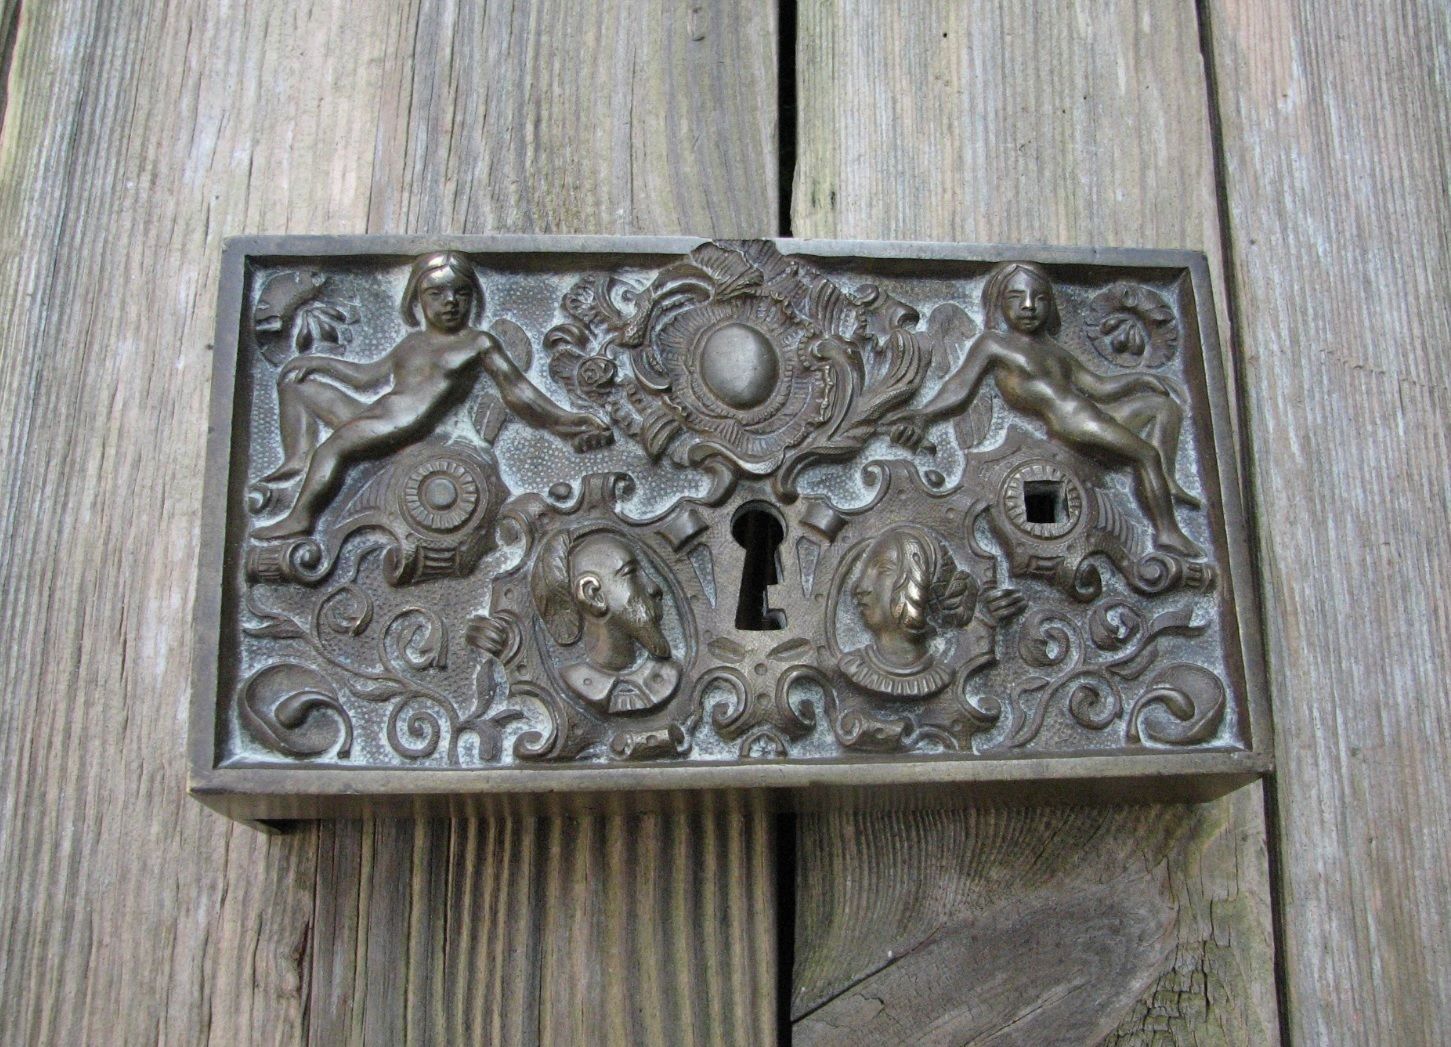 Antique Ornate Brass Lock Cover / Door Handle Knob